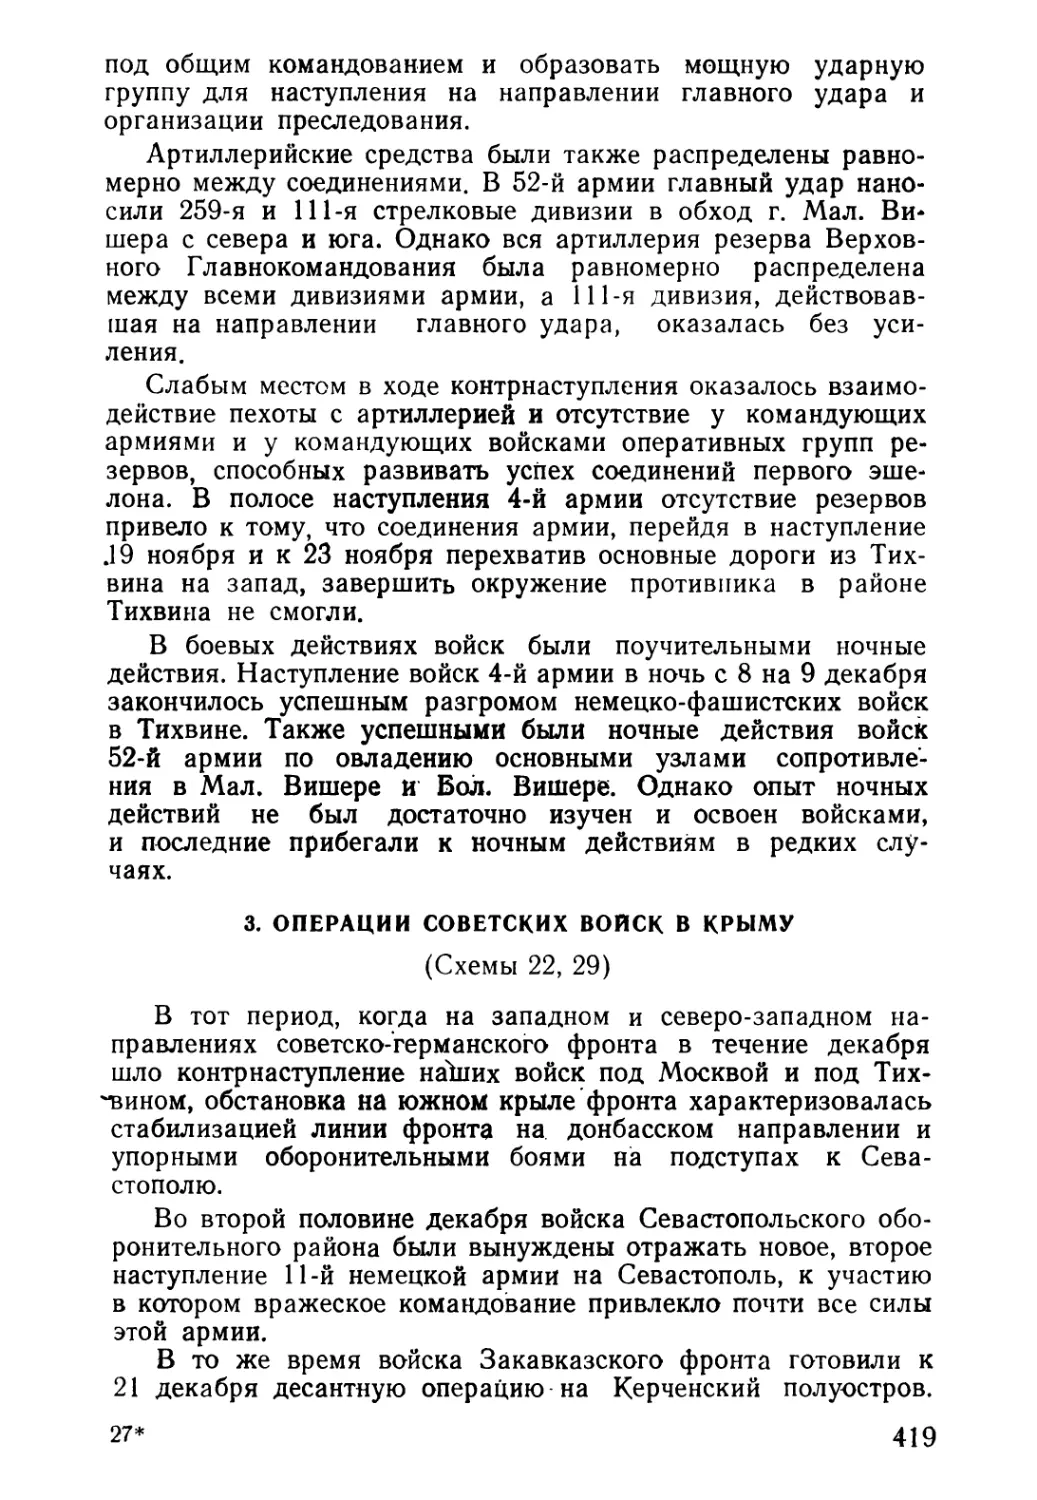 3. Операции советских войск в Крыму